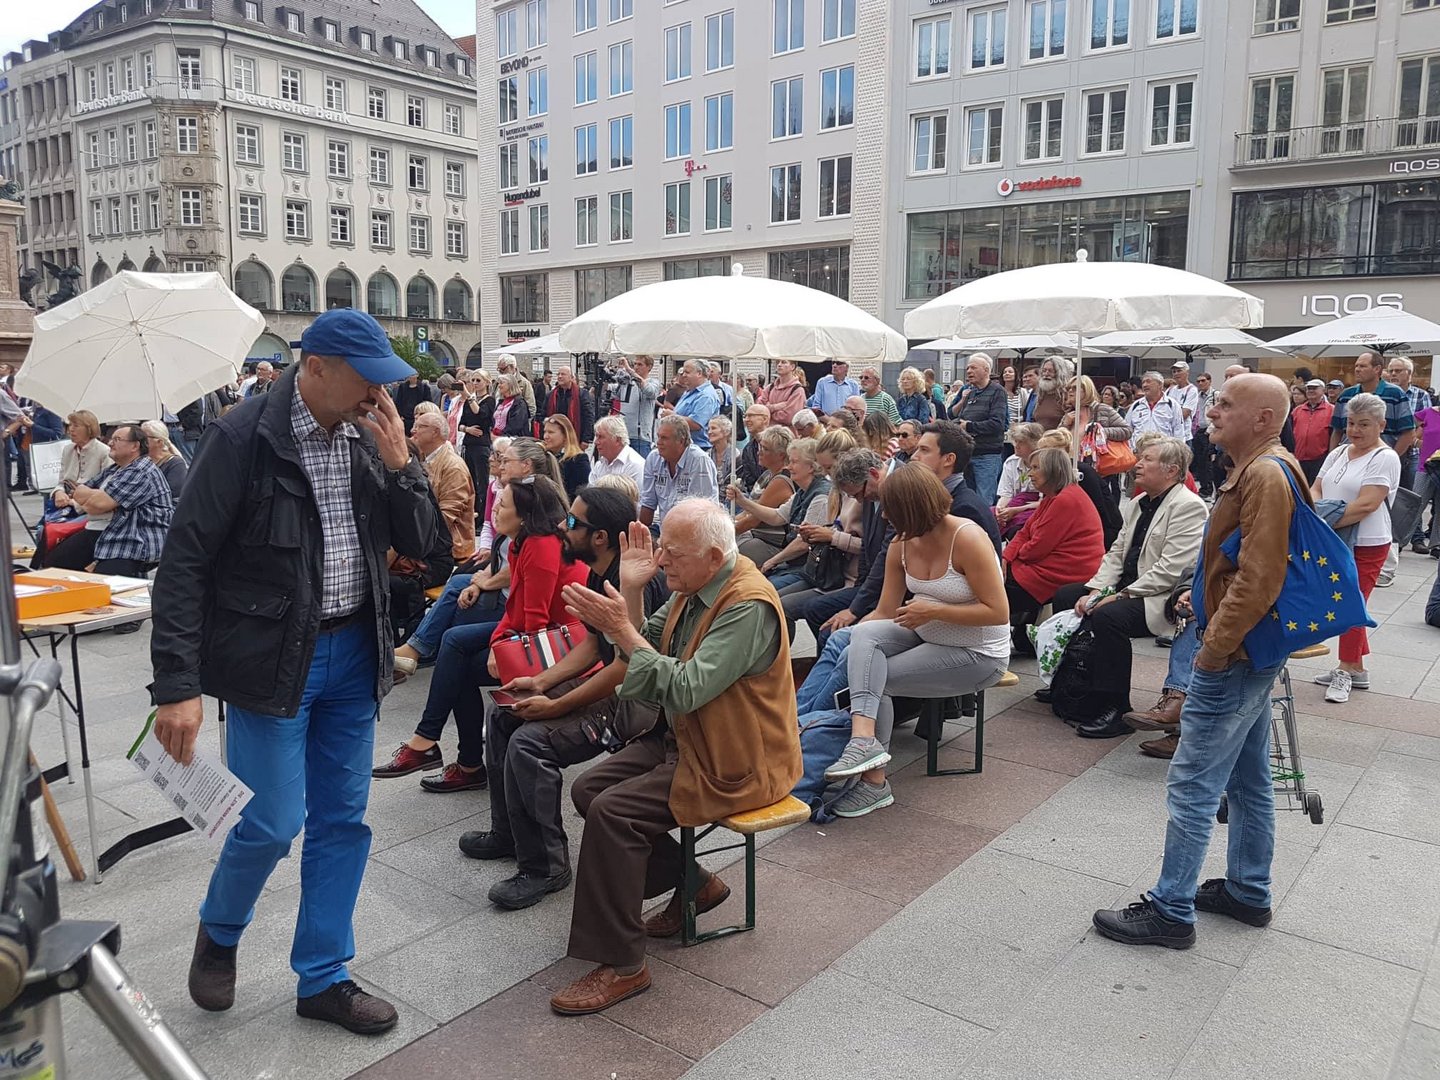 Meine Veranstaltung auf dem Münchner Marienplatz 14.15. September 2018